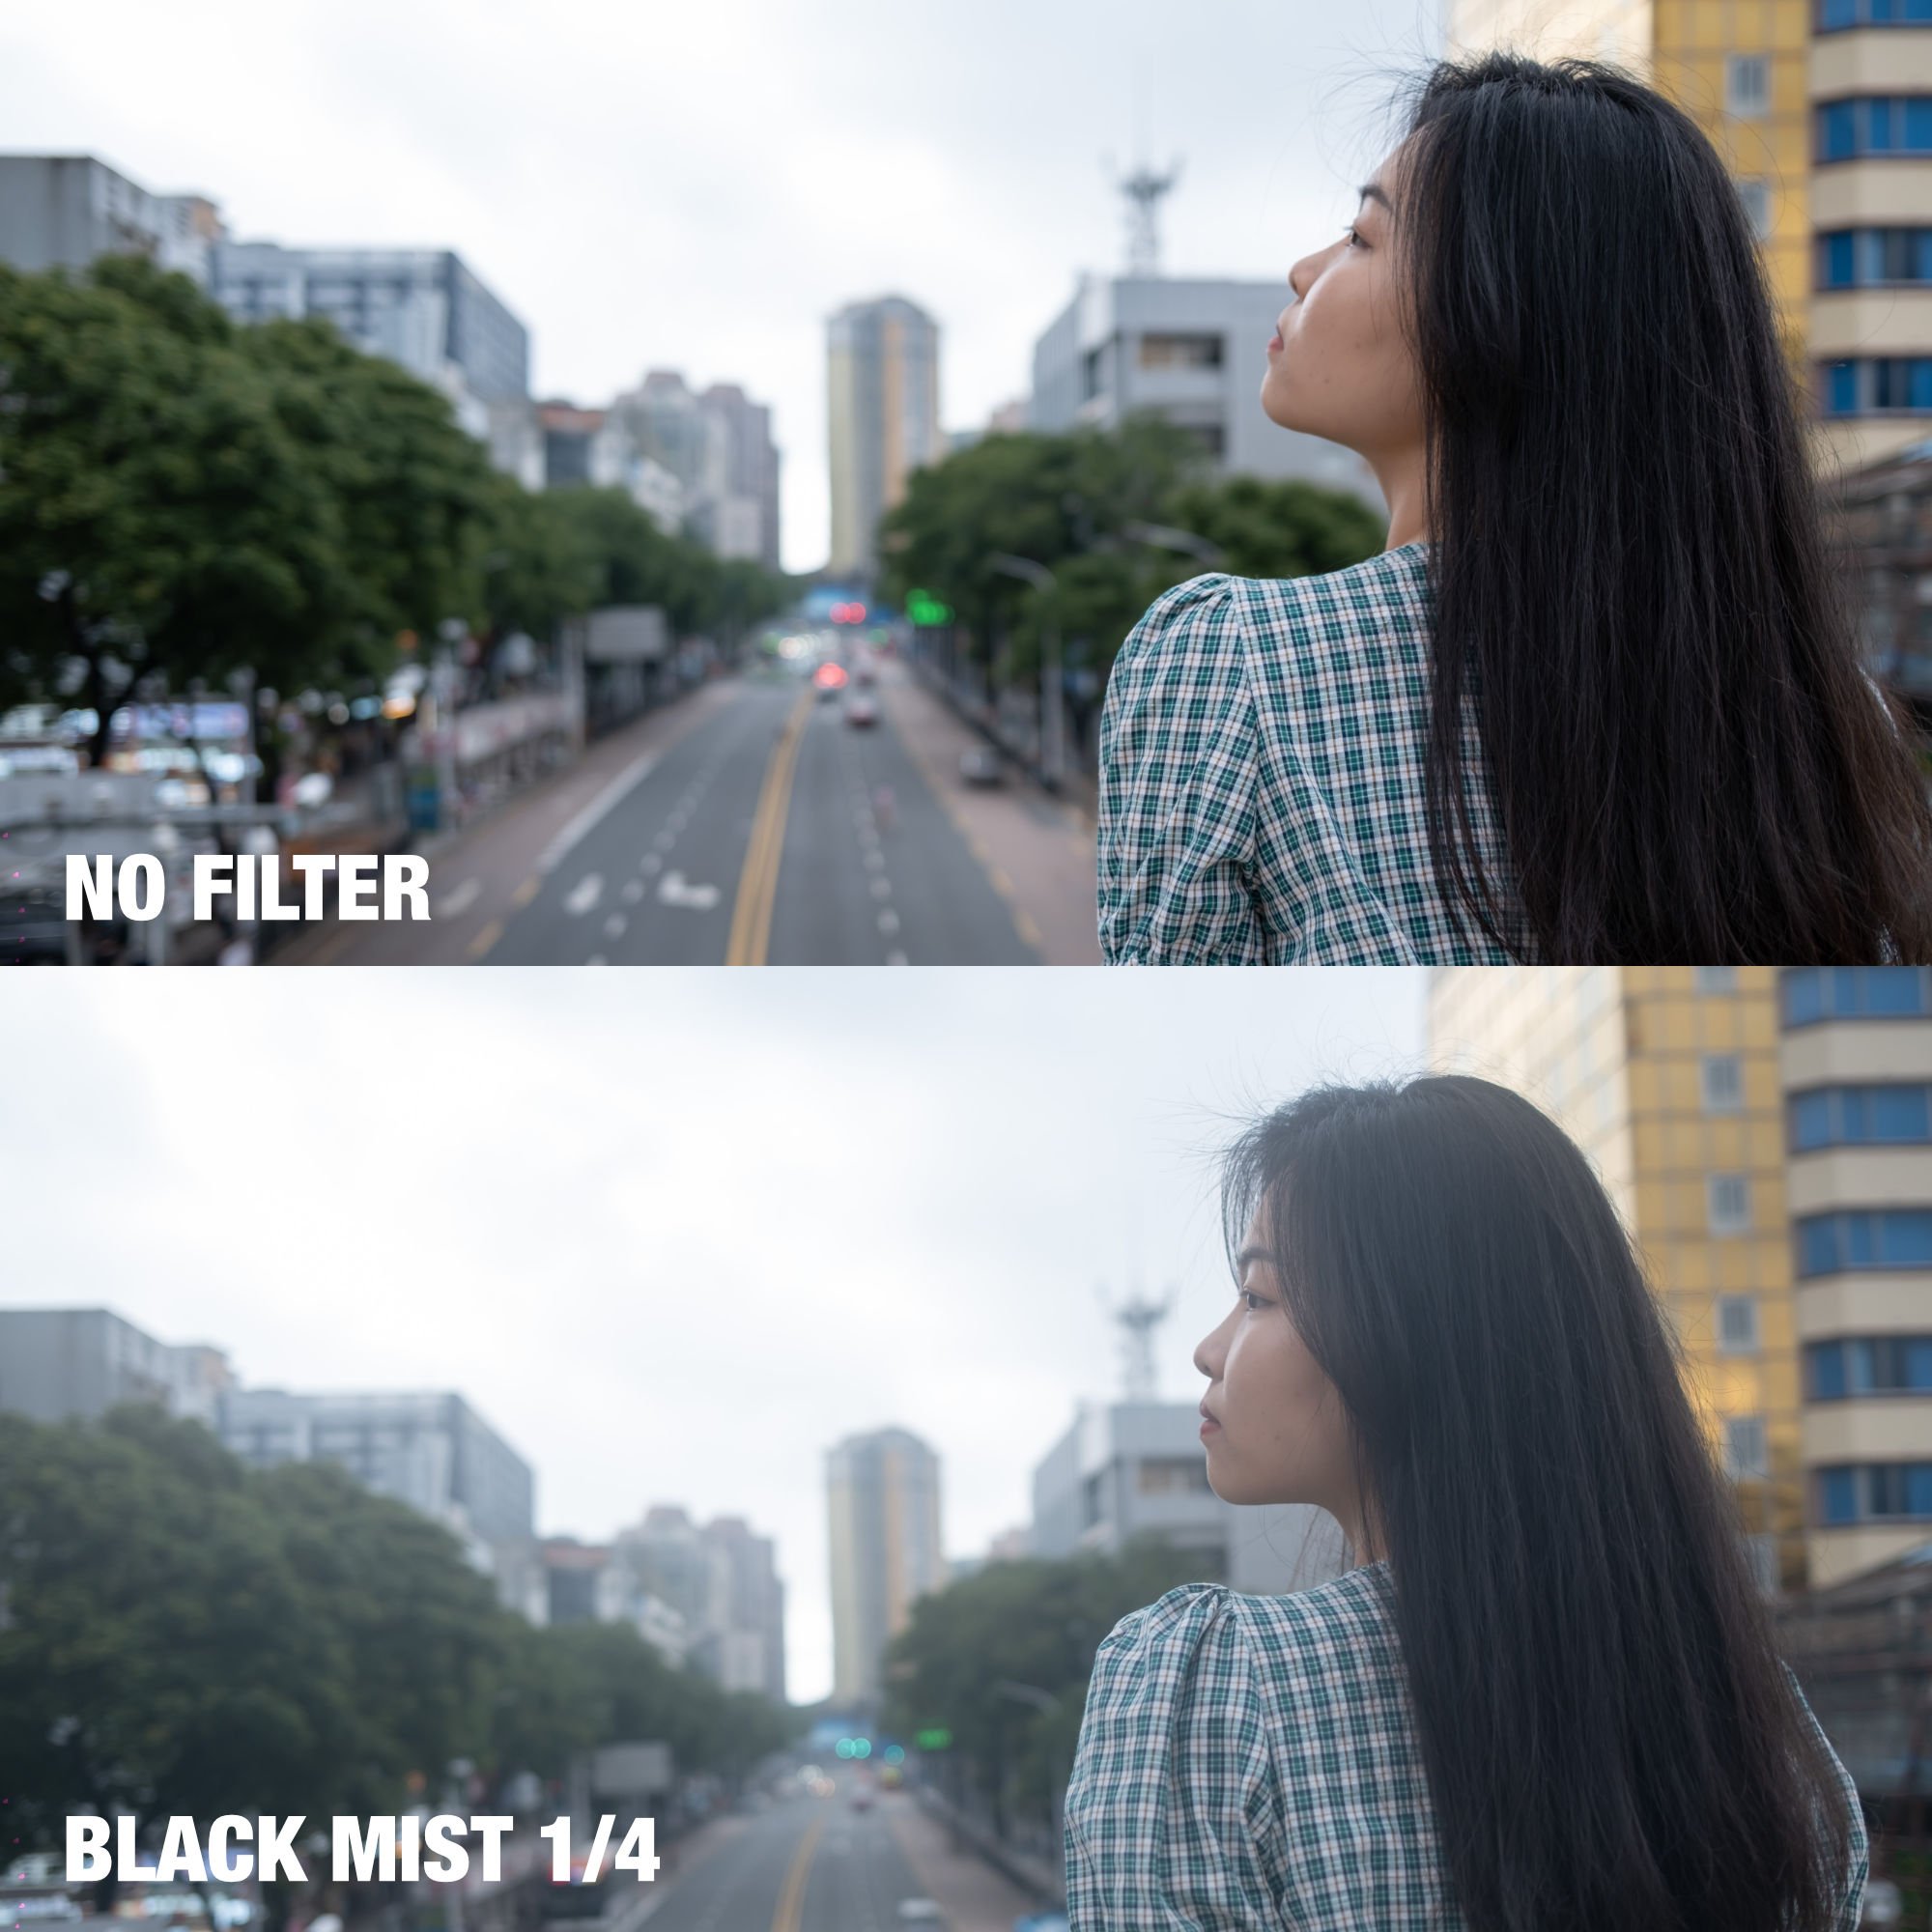 NiSi Black Mist 1_4 for Fujifilm X100 Series - Sample 2.jpg